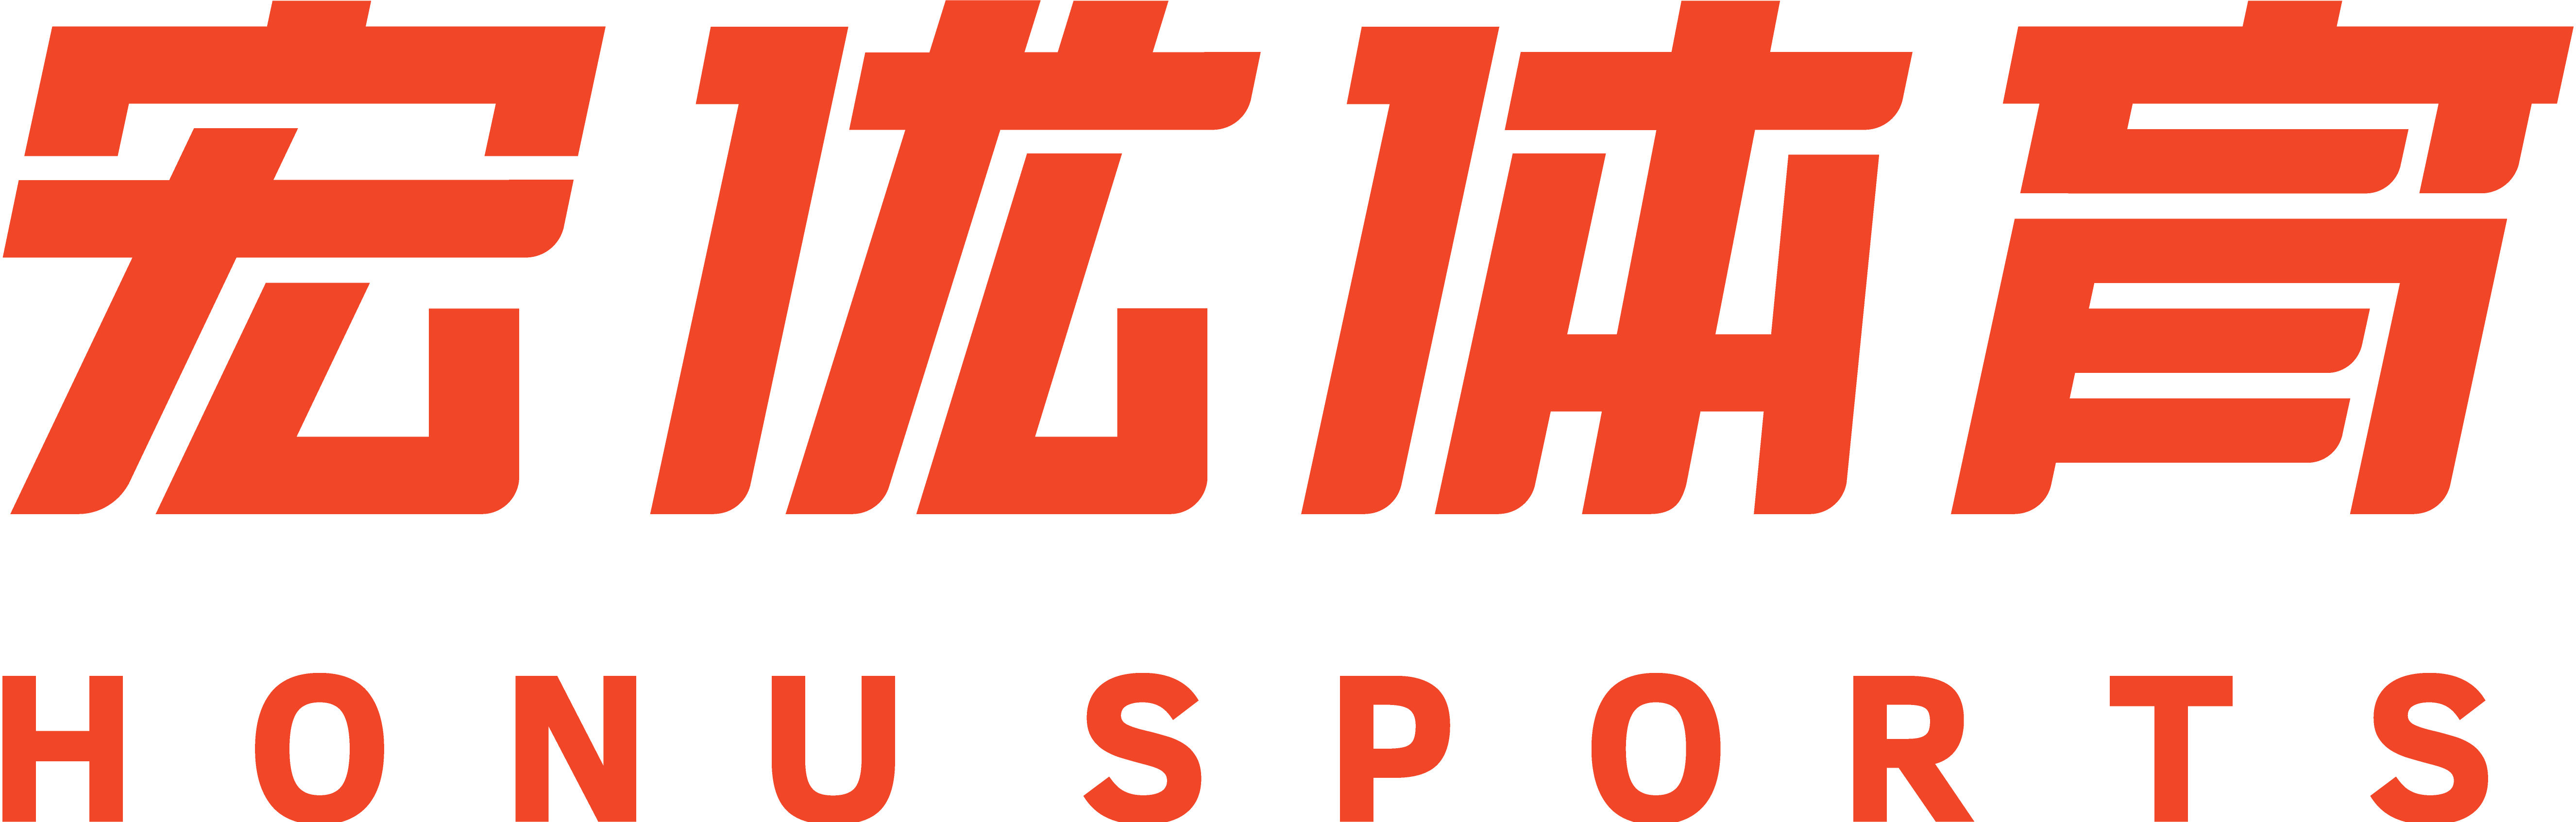 宏優體育品牌logo